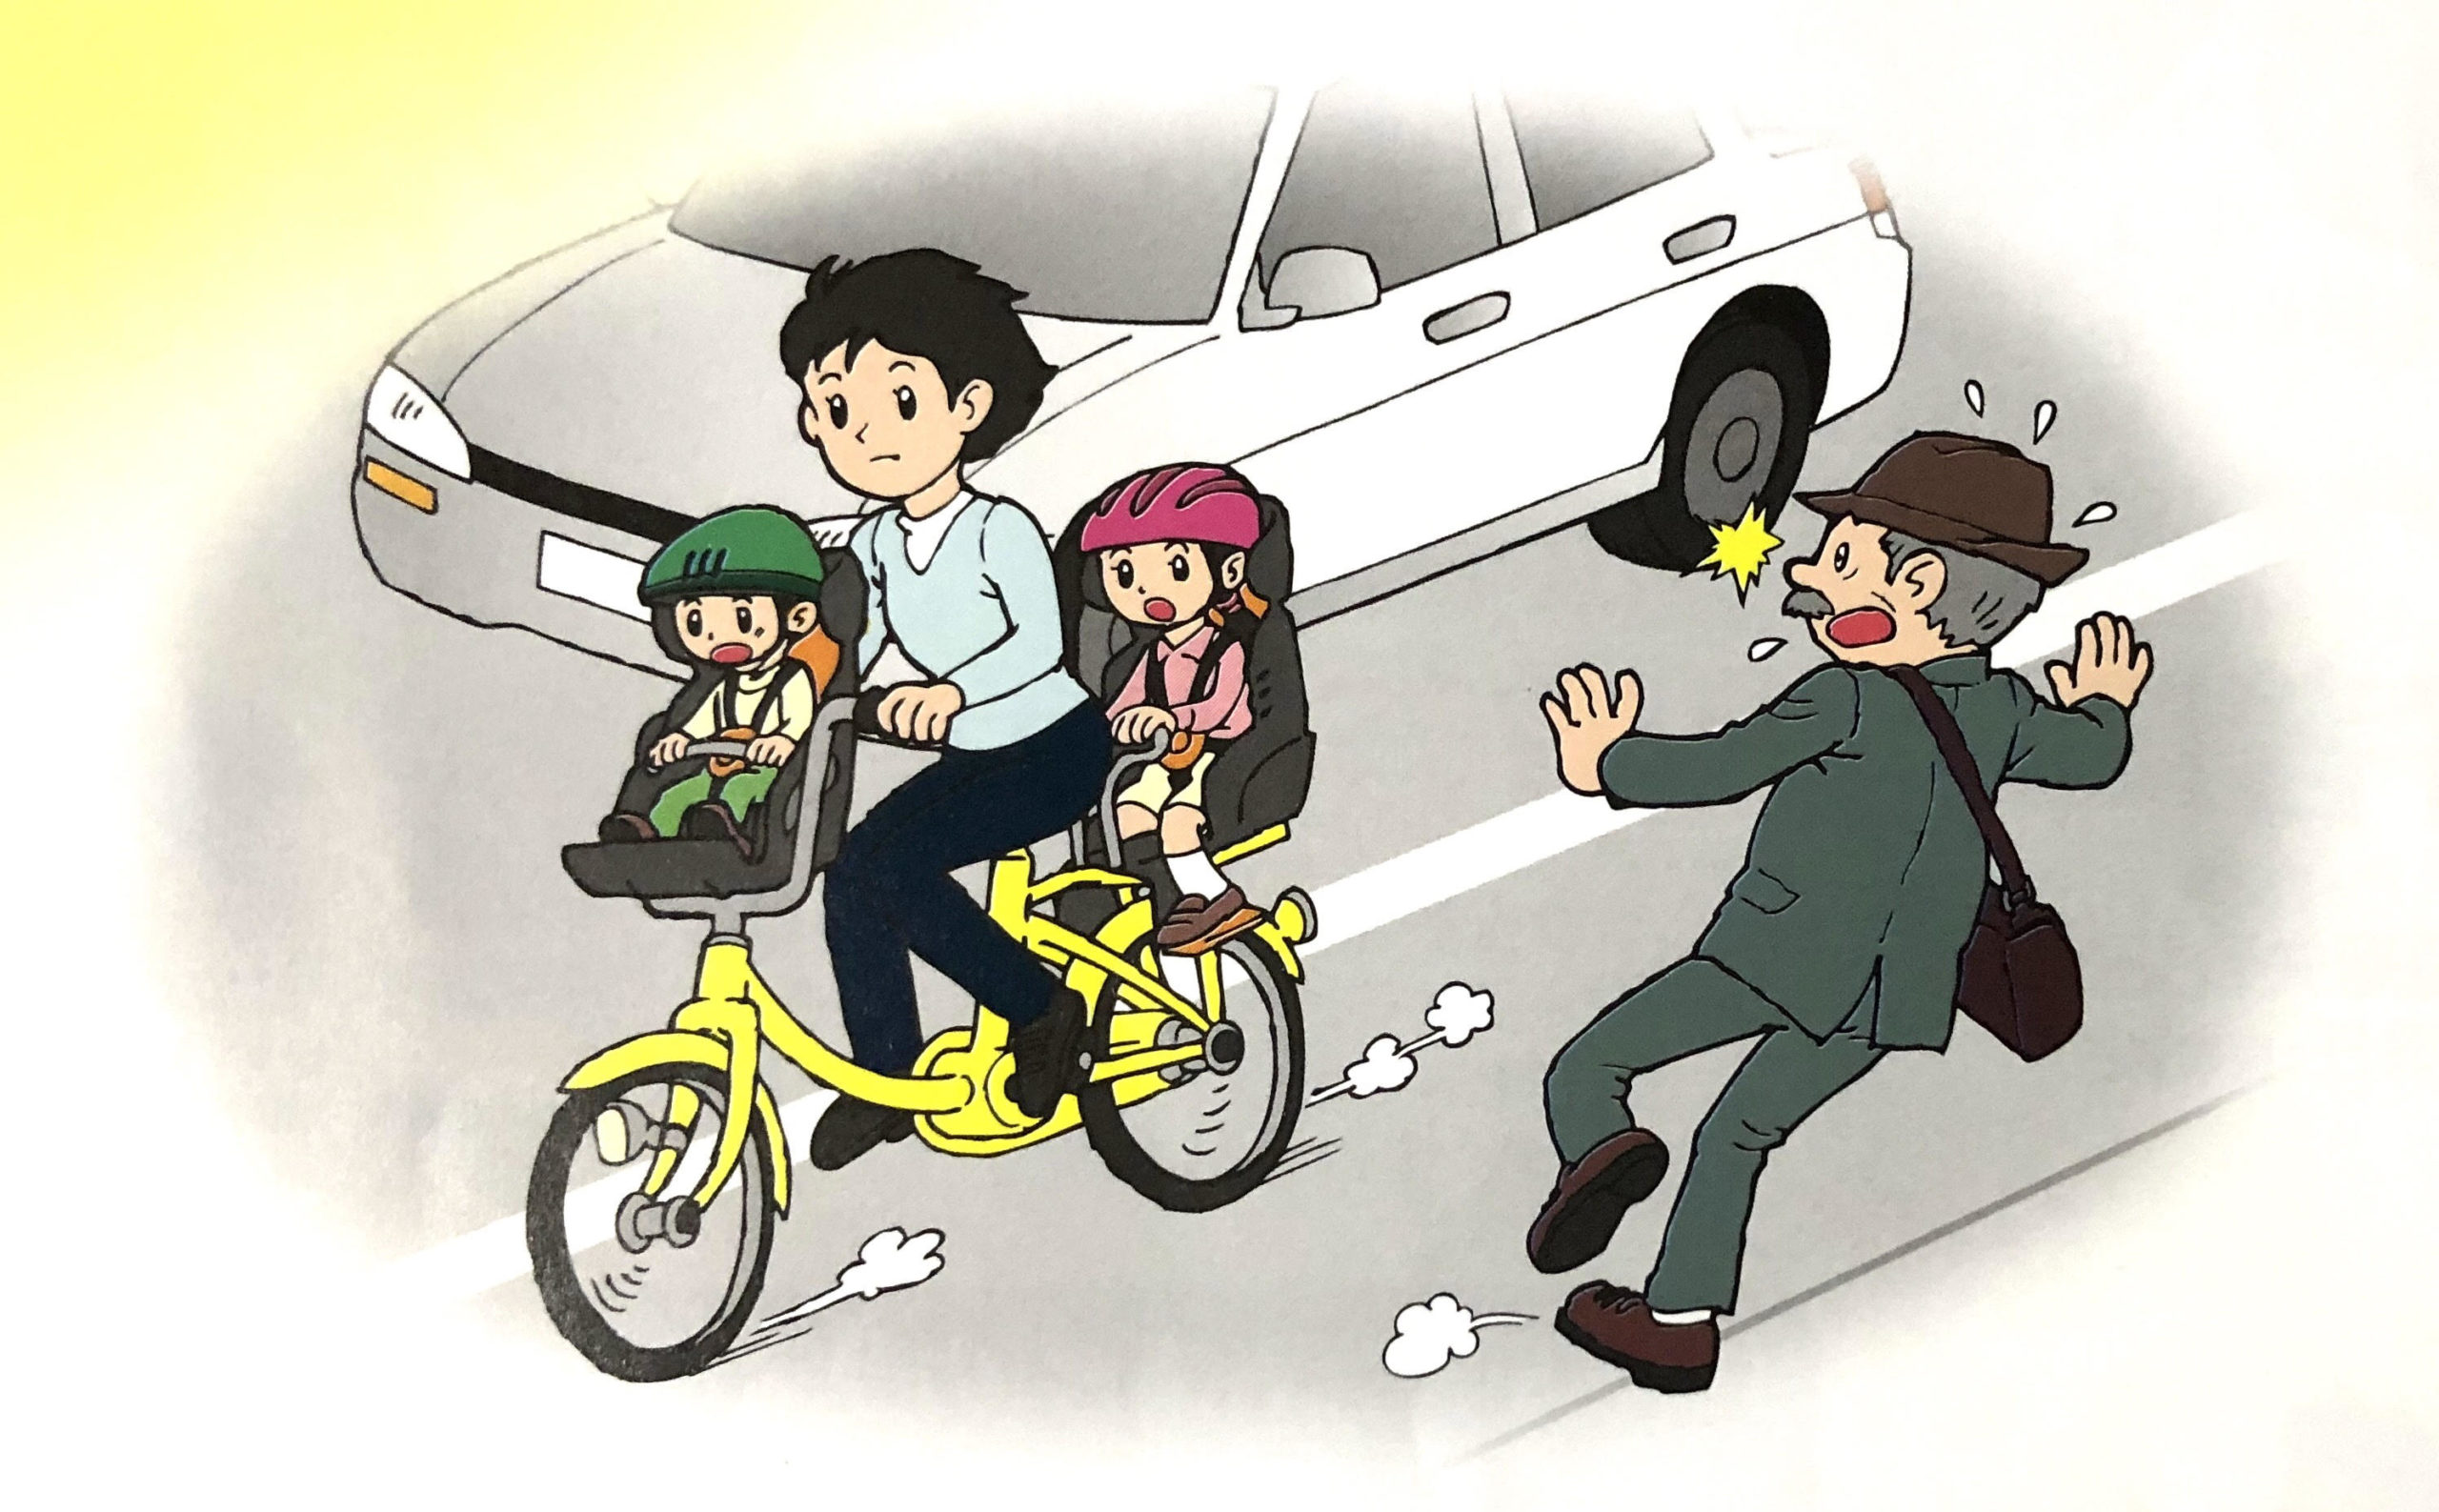 自転車の安全走行のために ヘルメット着用を努力義務化 かいでん和弘 カイデンカズヒロ 選挙ドットコム